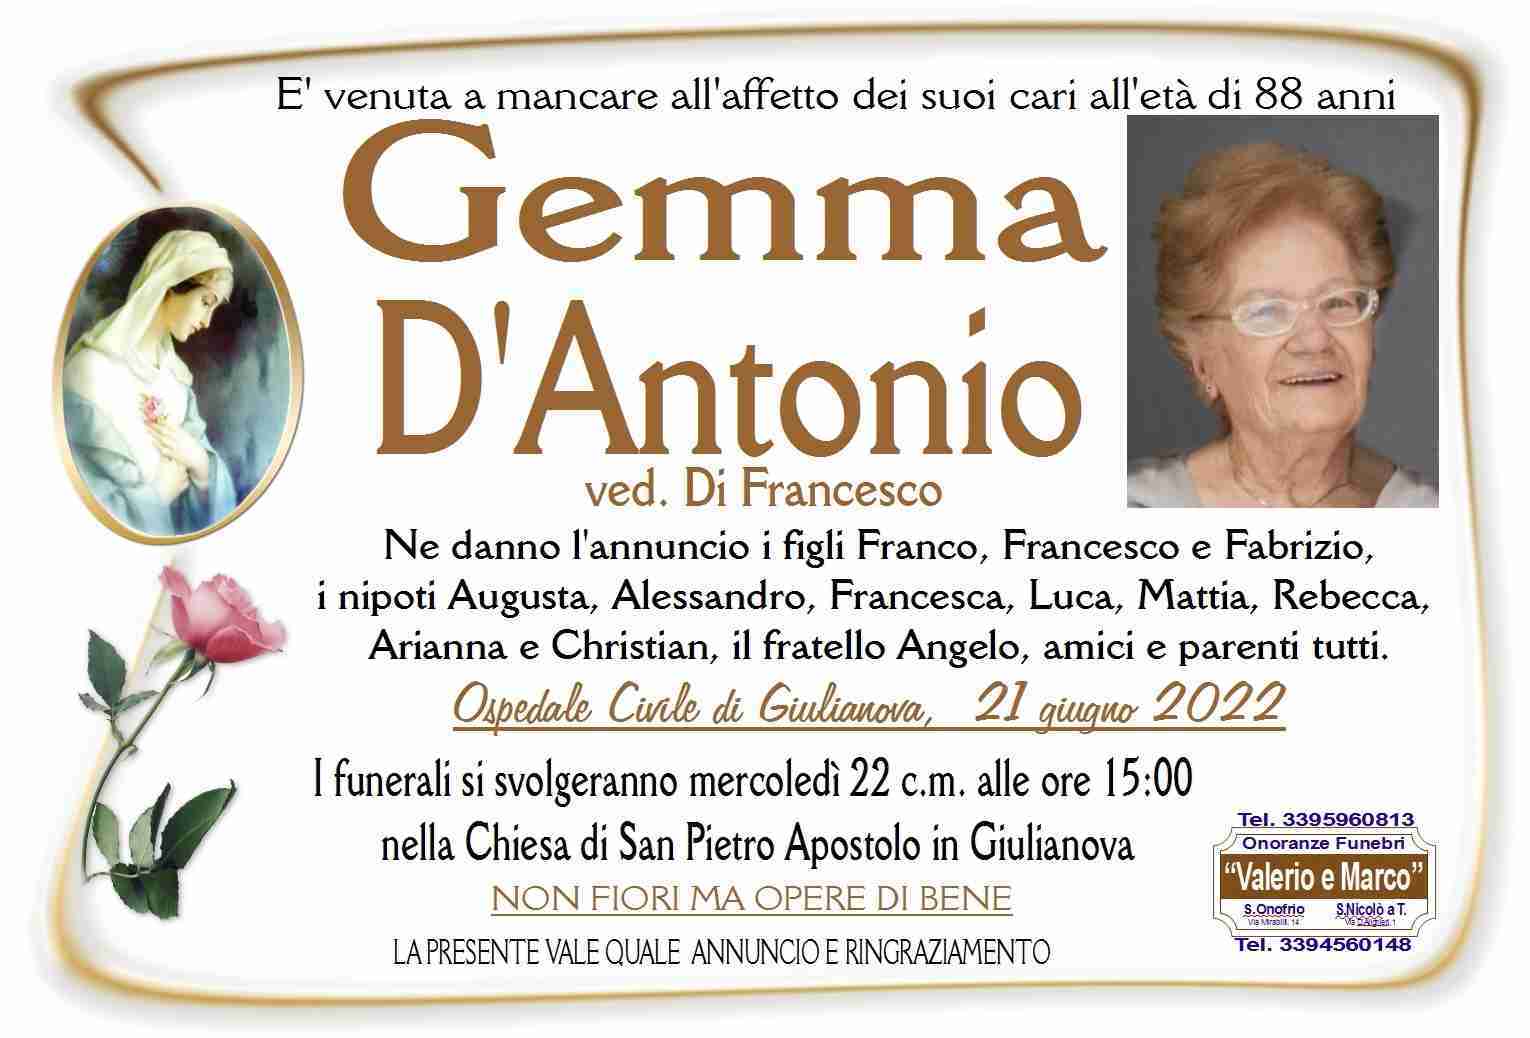 Gemma D'Antonio